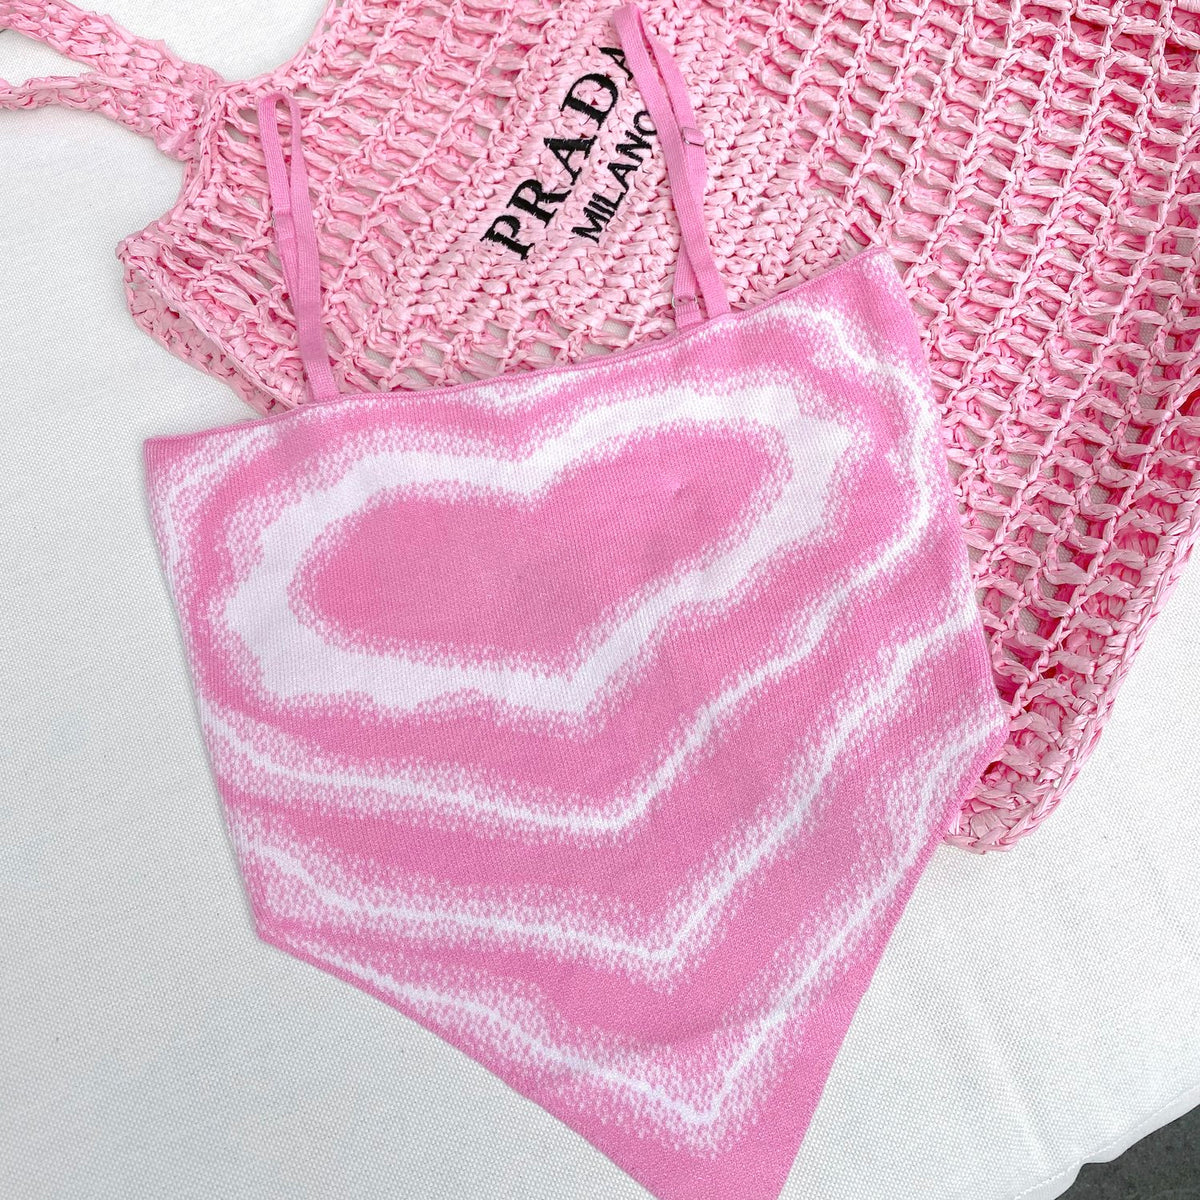 Knit Valentine Top Pink